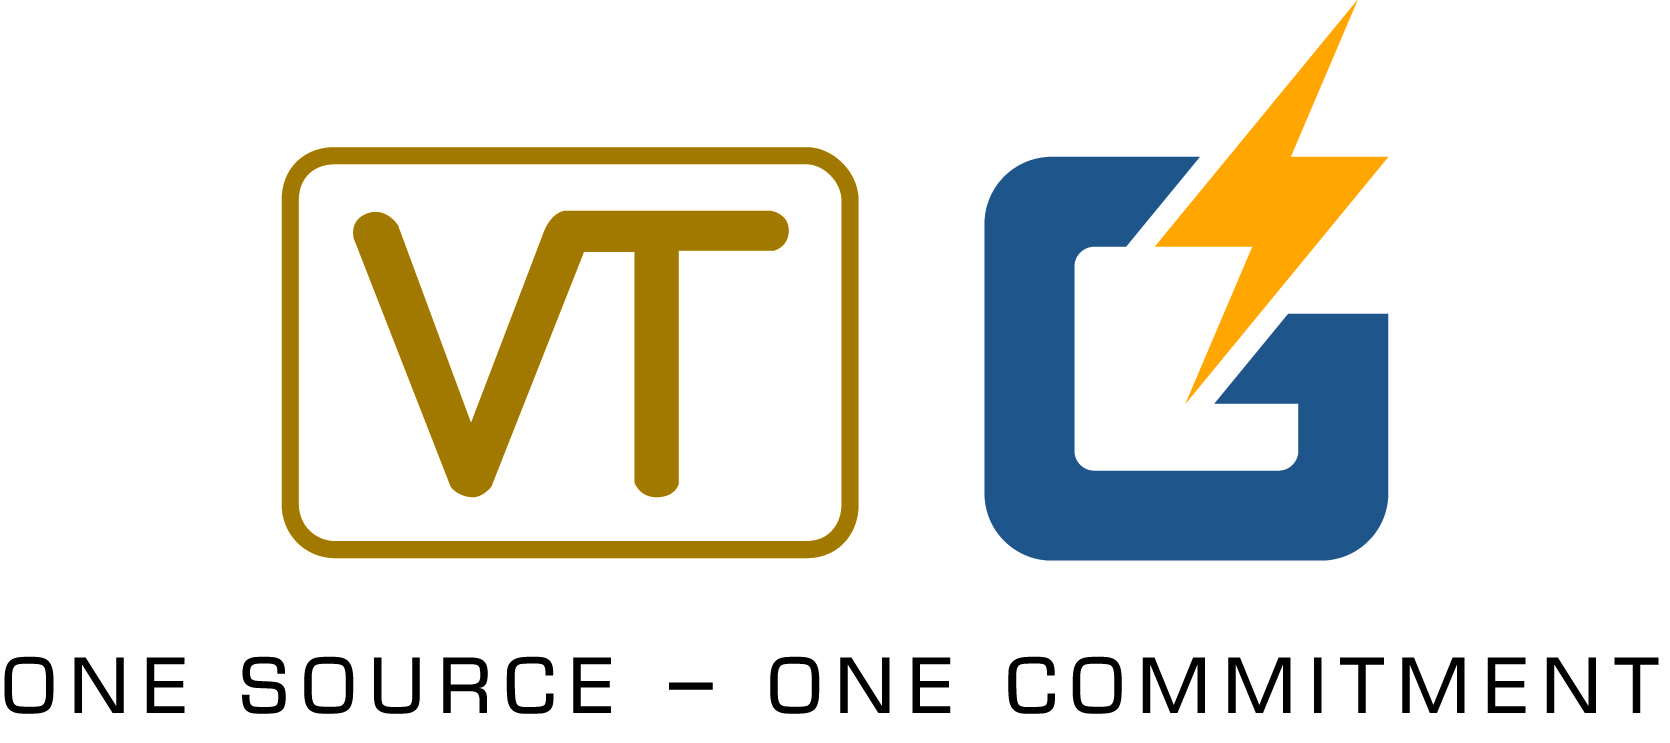 Virginia Transformer Corp logo